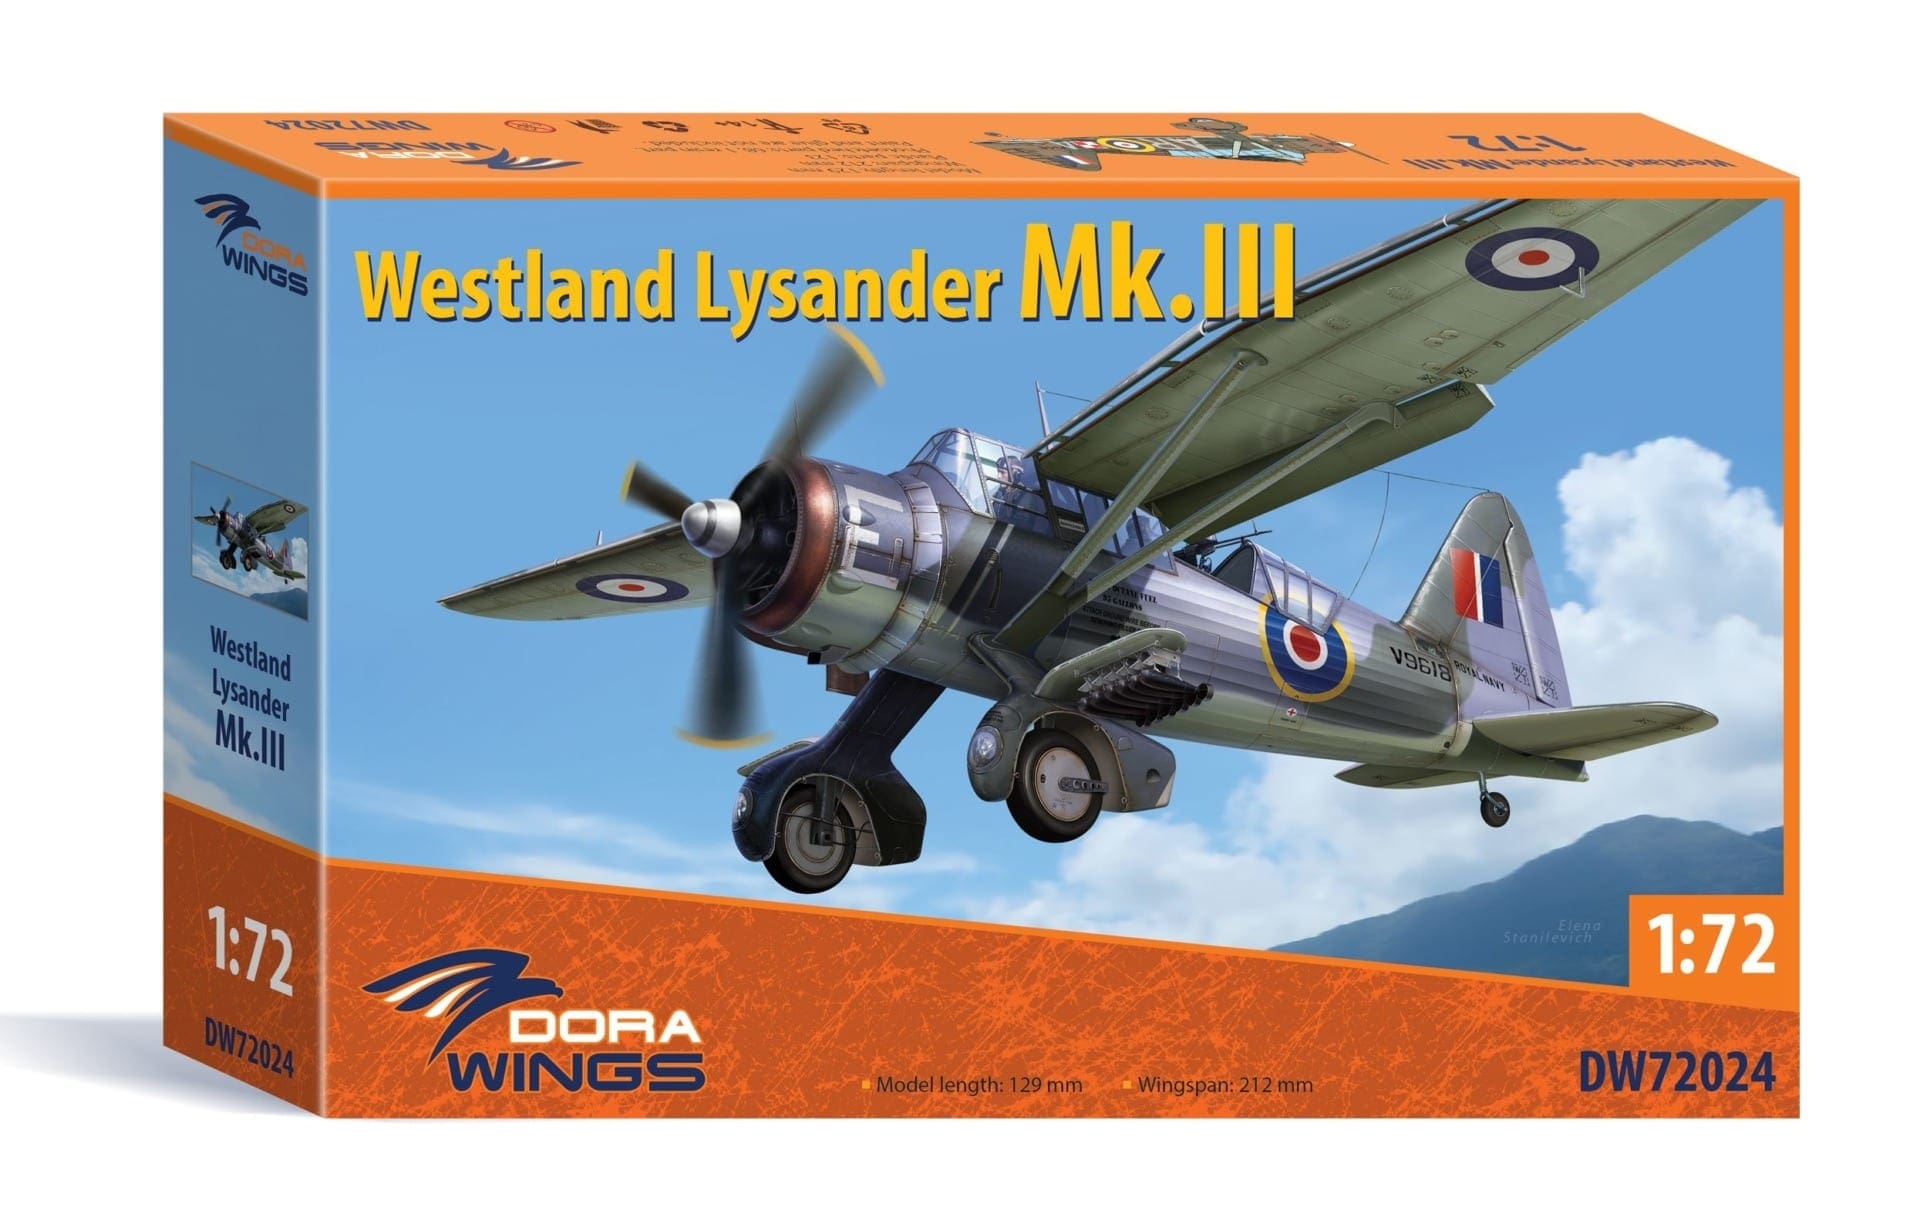 Dora Wings 72024-1/72 Westland Lysander Mk III Scale Model Kit 123 pcs UK 